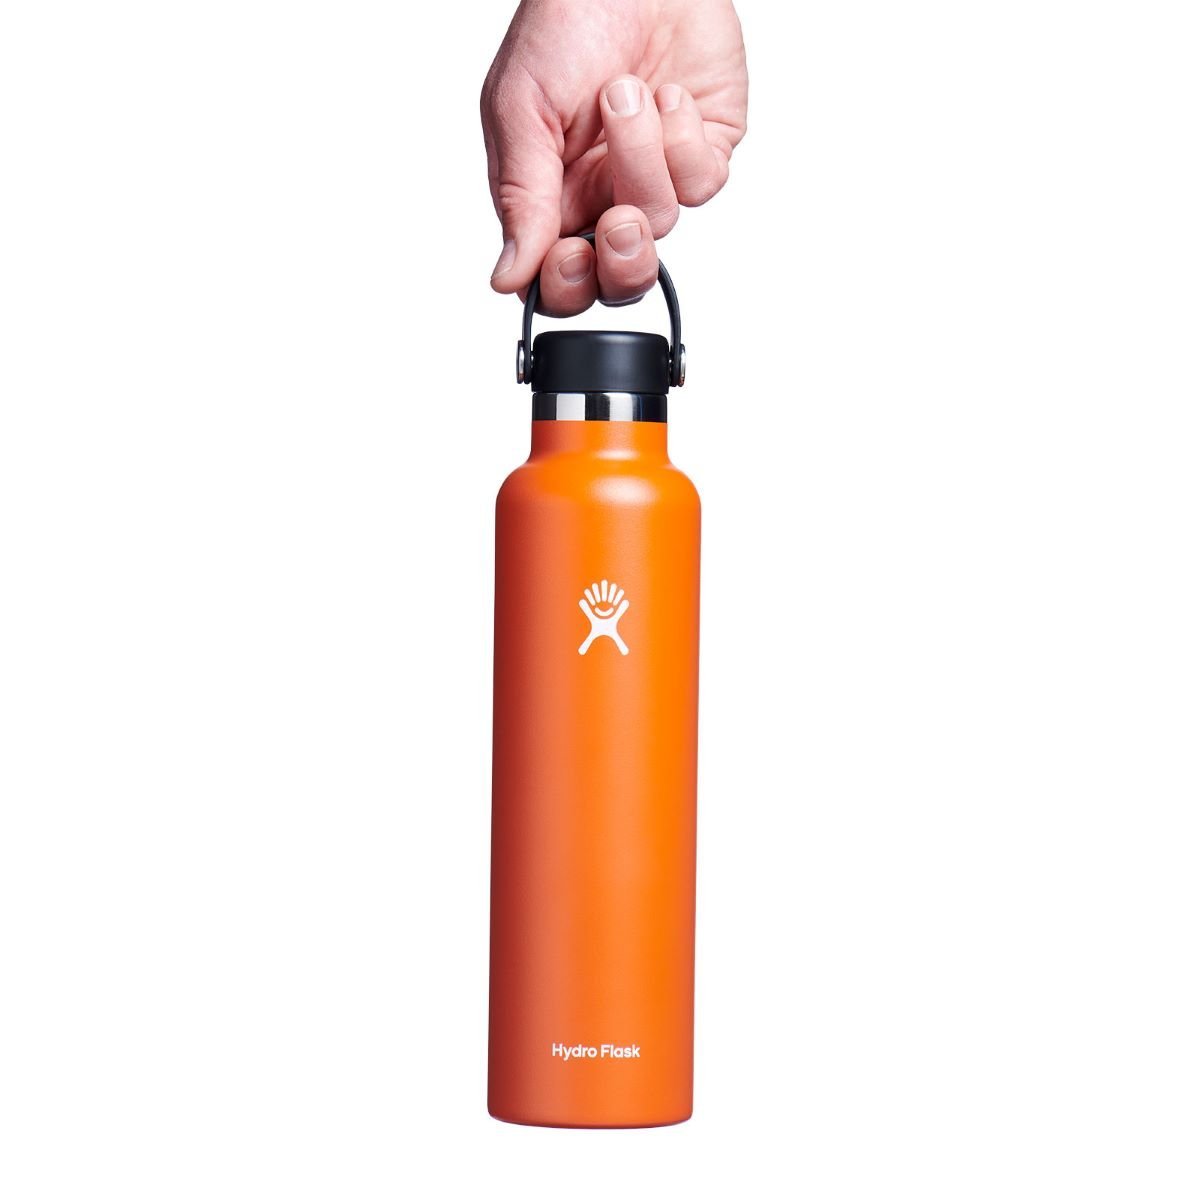 Termoska Hydro Flask 24oz (710ml) Standard Mouth - oranžová